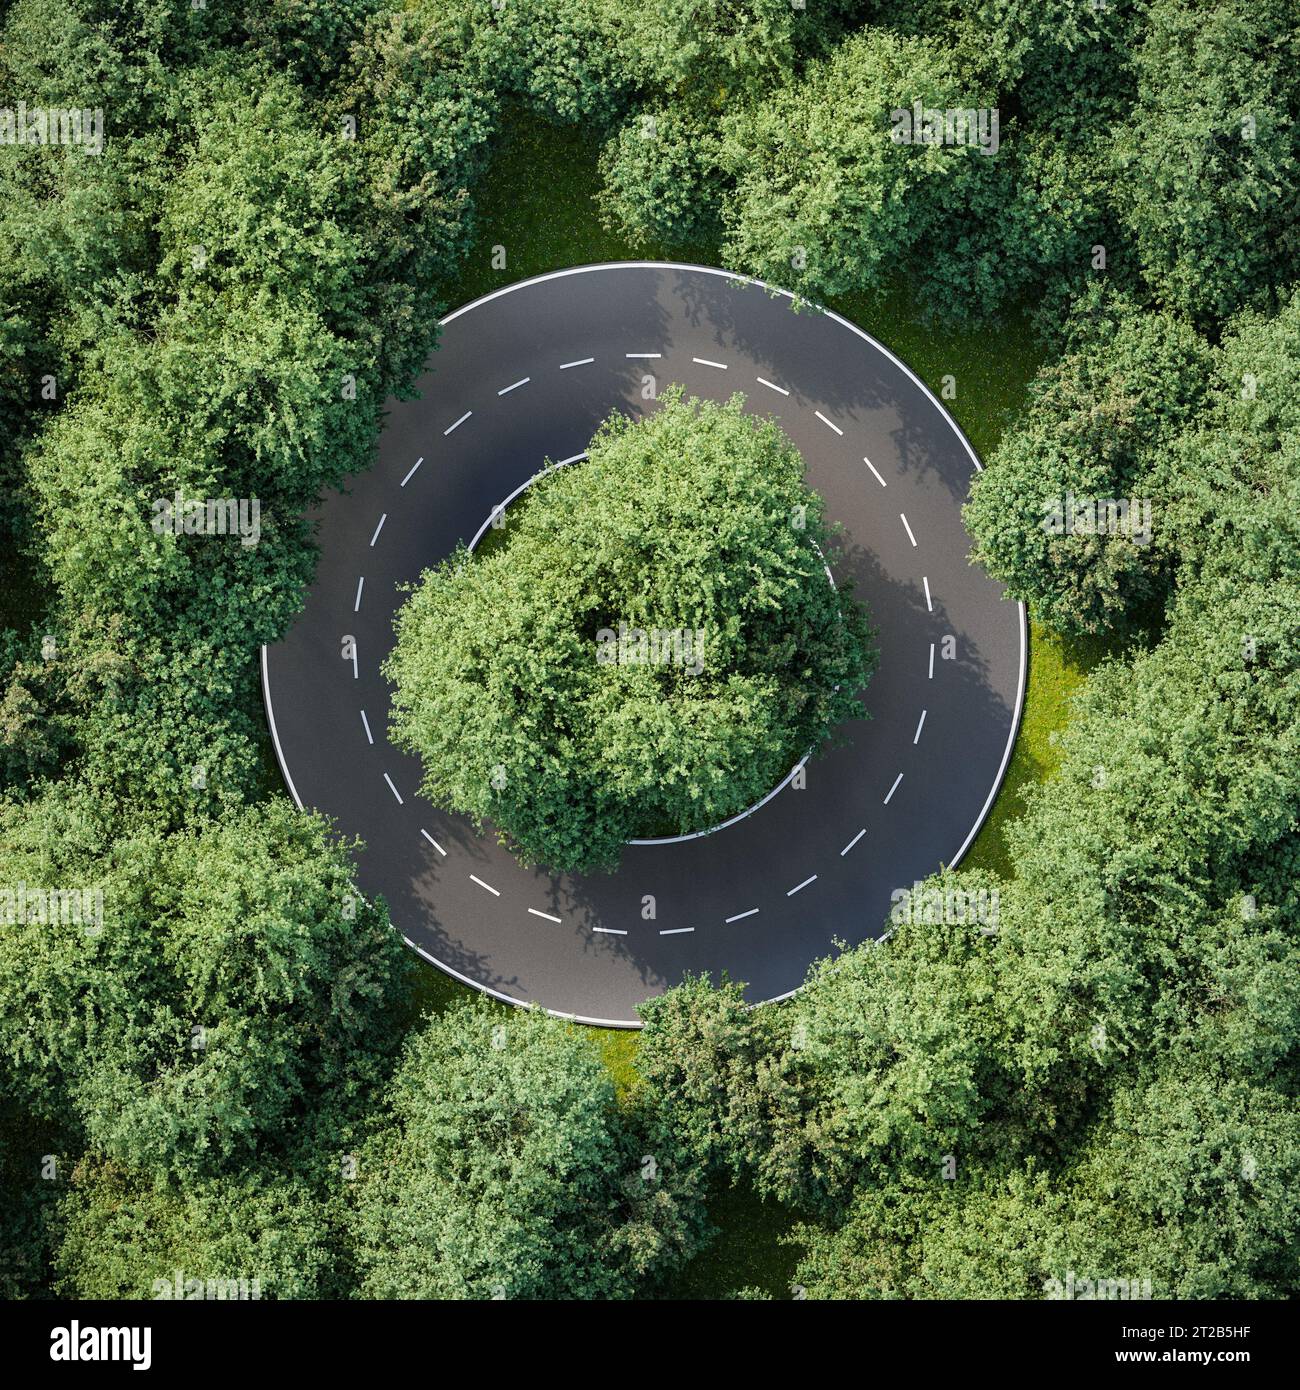 Luftbild einer kreisförmigen Straße in einem Ulmenwald - Konzept für keinen Ausweg, Hoffnungslosigkeit, Langeweile, Gleichmäßigkeit, Konformität. 3D-Rendering Stockfoto